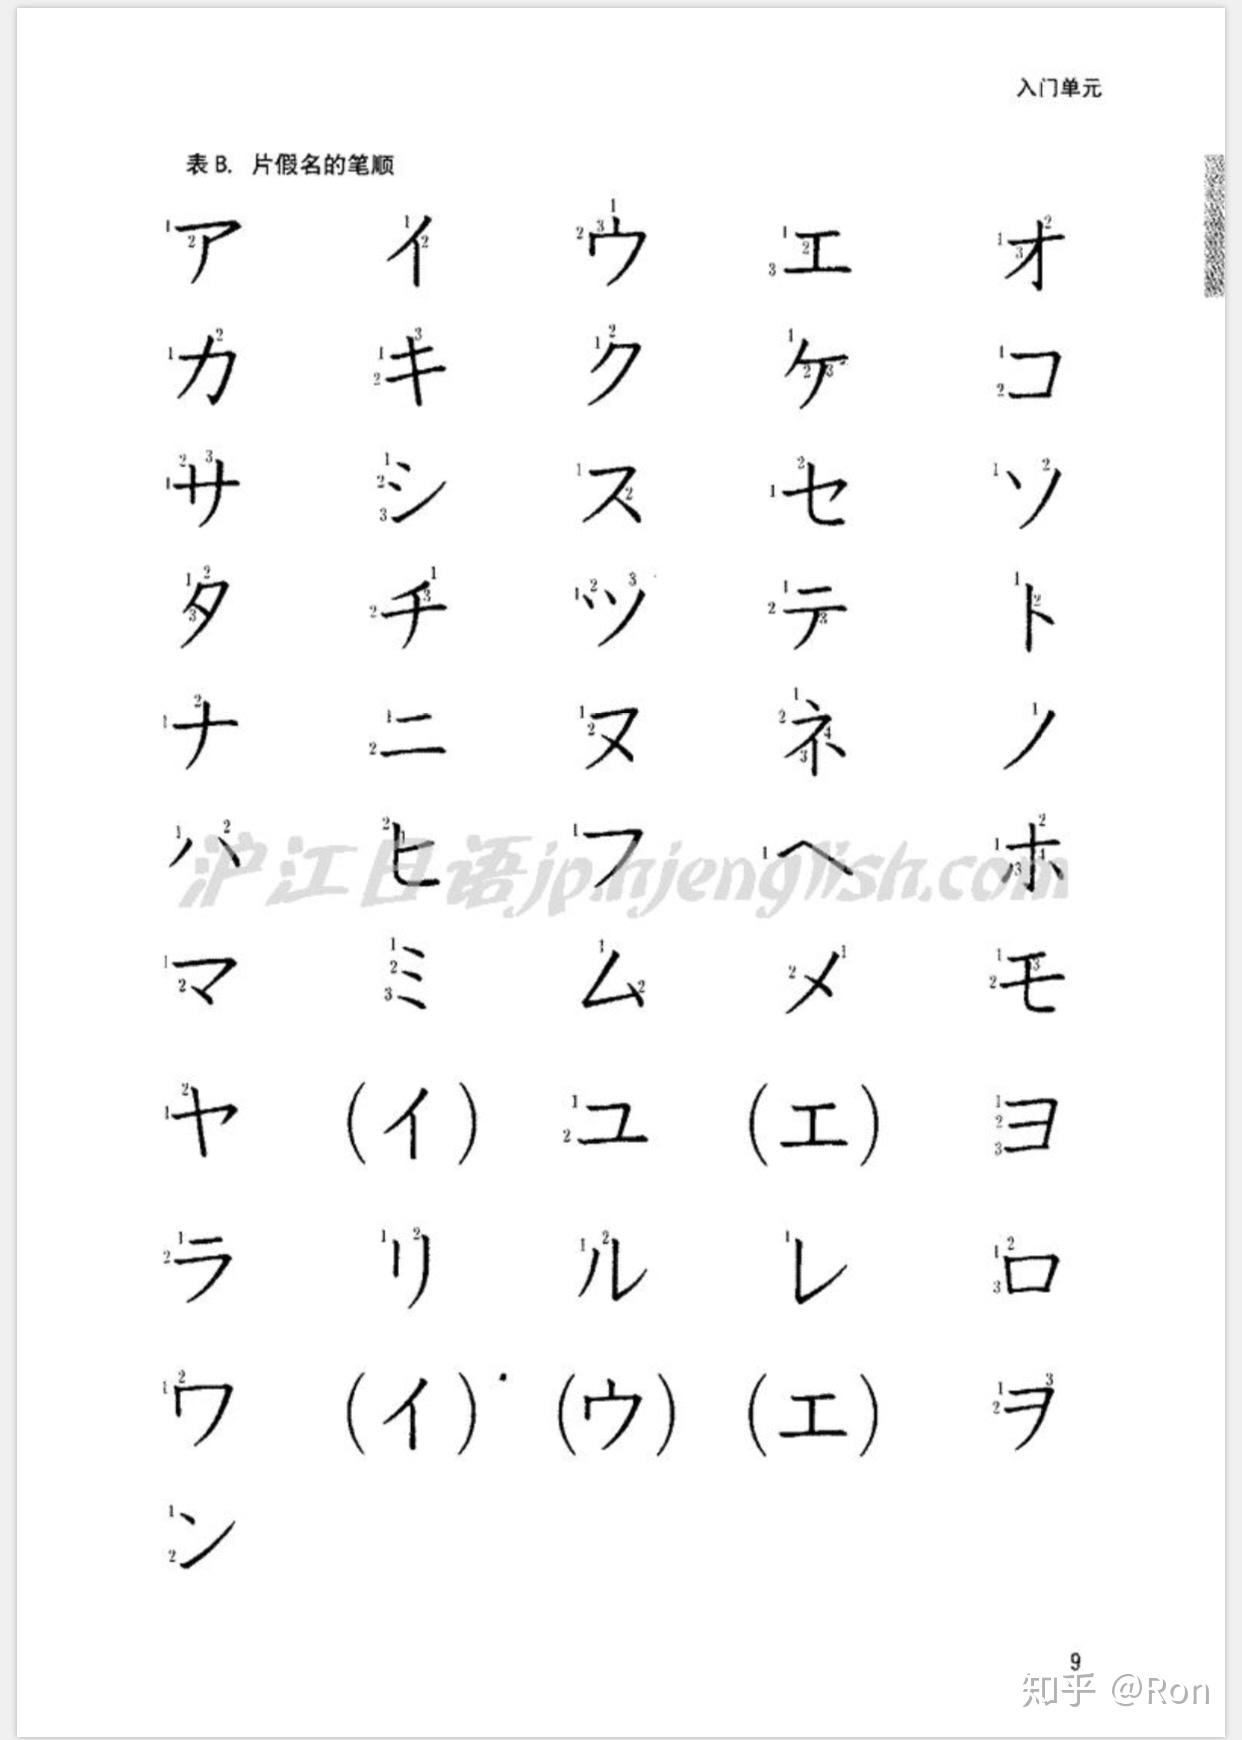 日语假名的手写体写法是怎么样的? 